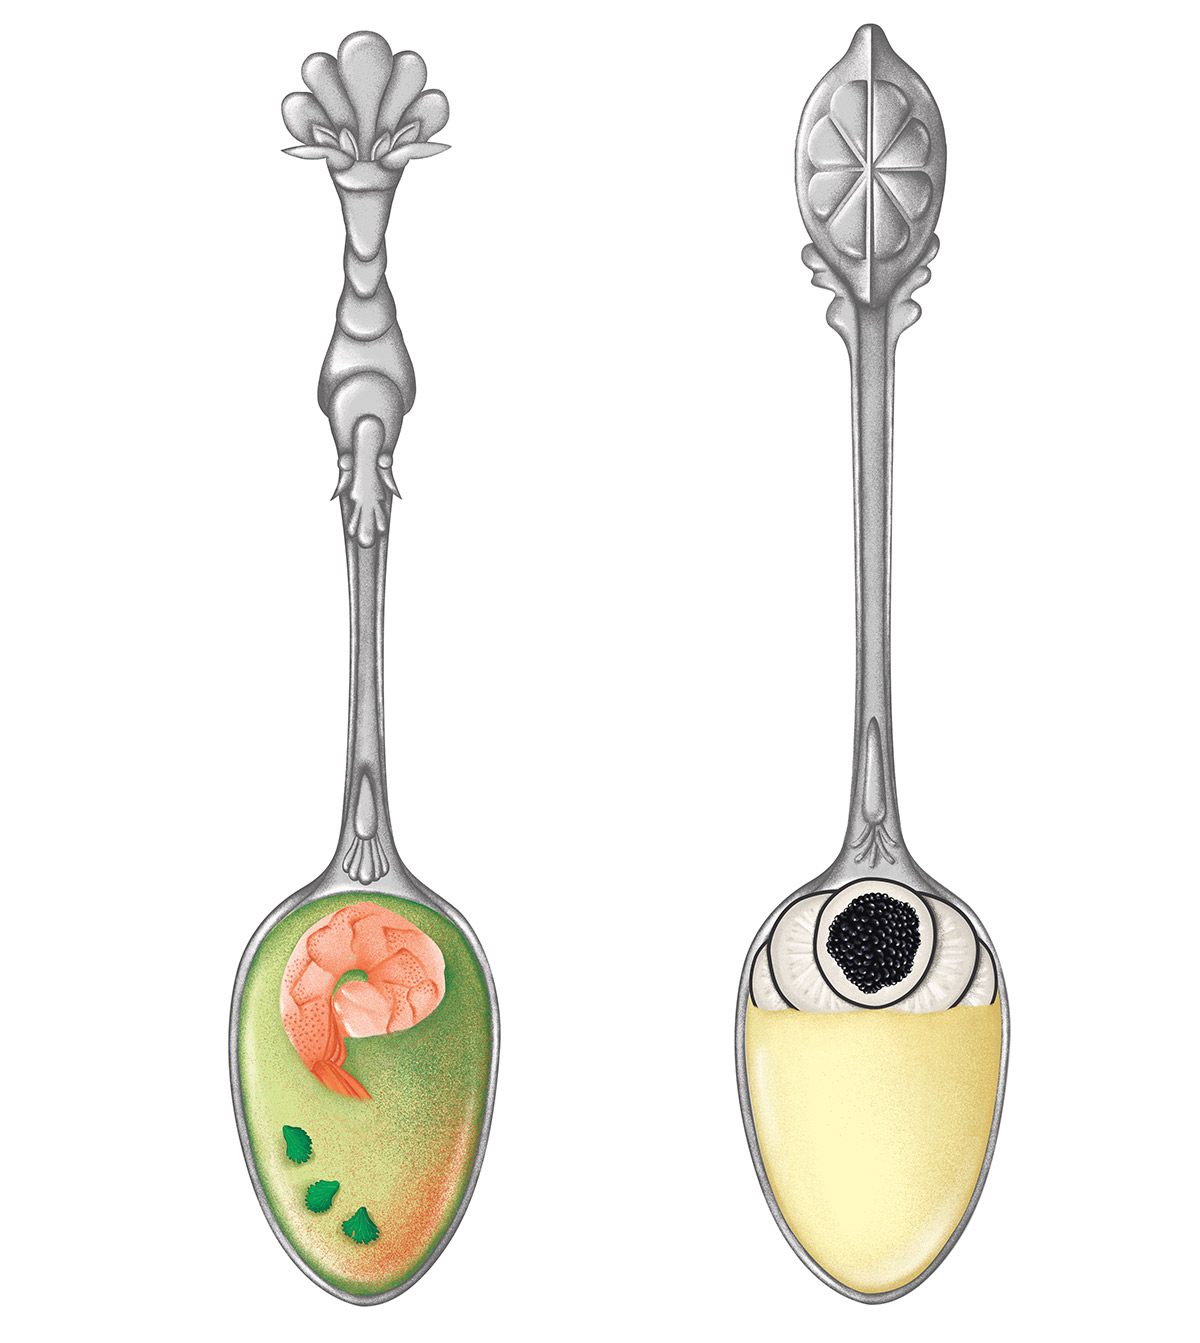 illustration réaliste de cuillères en argent ornées d'une crevette et d'un citron par ichetkar recettes au yaourt